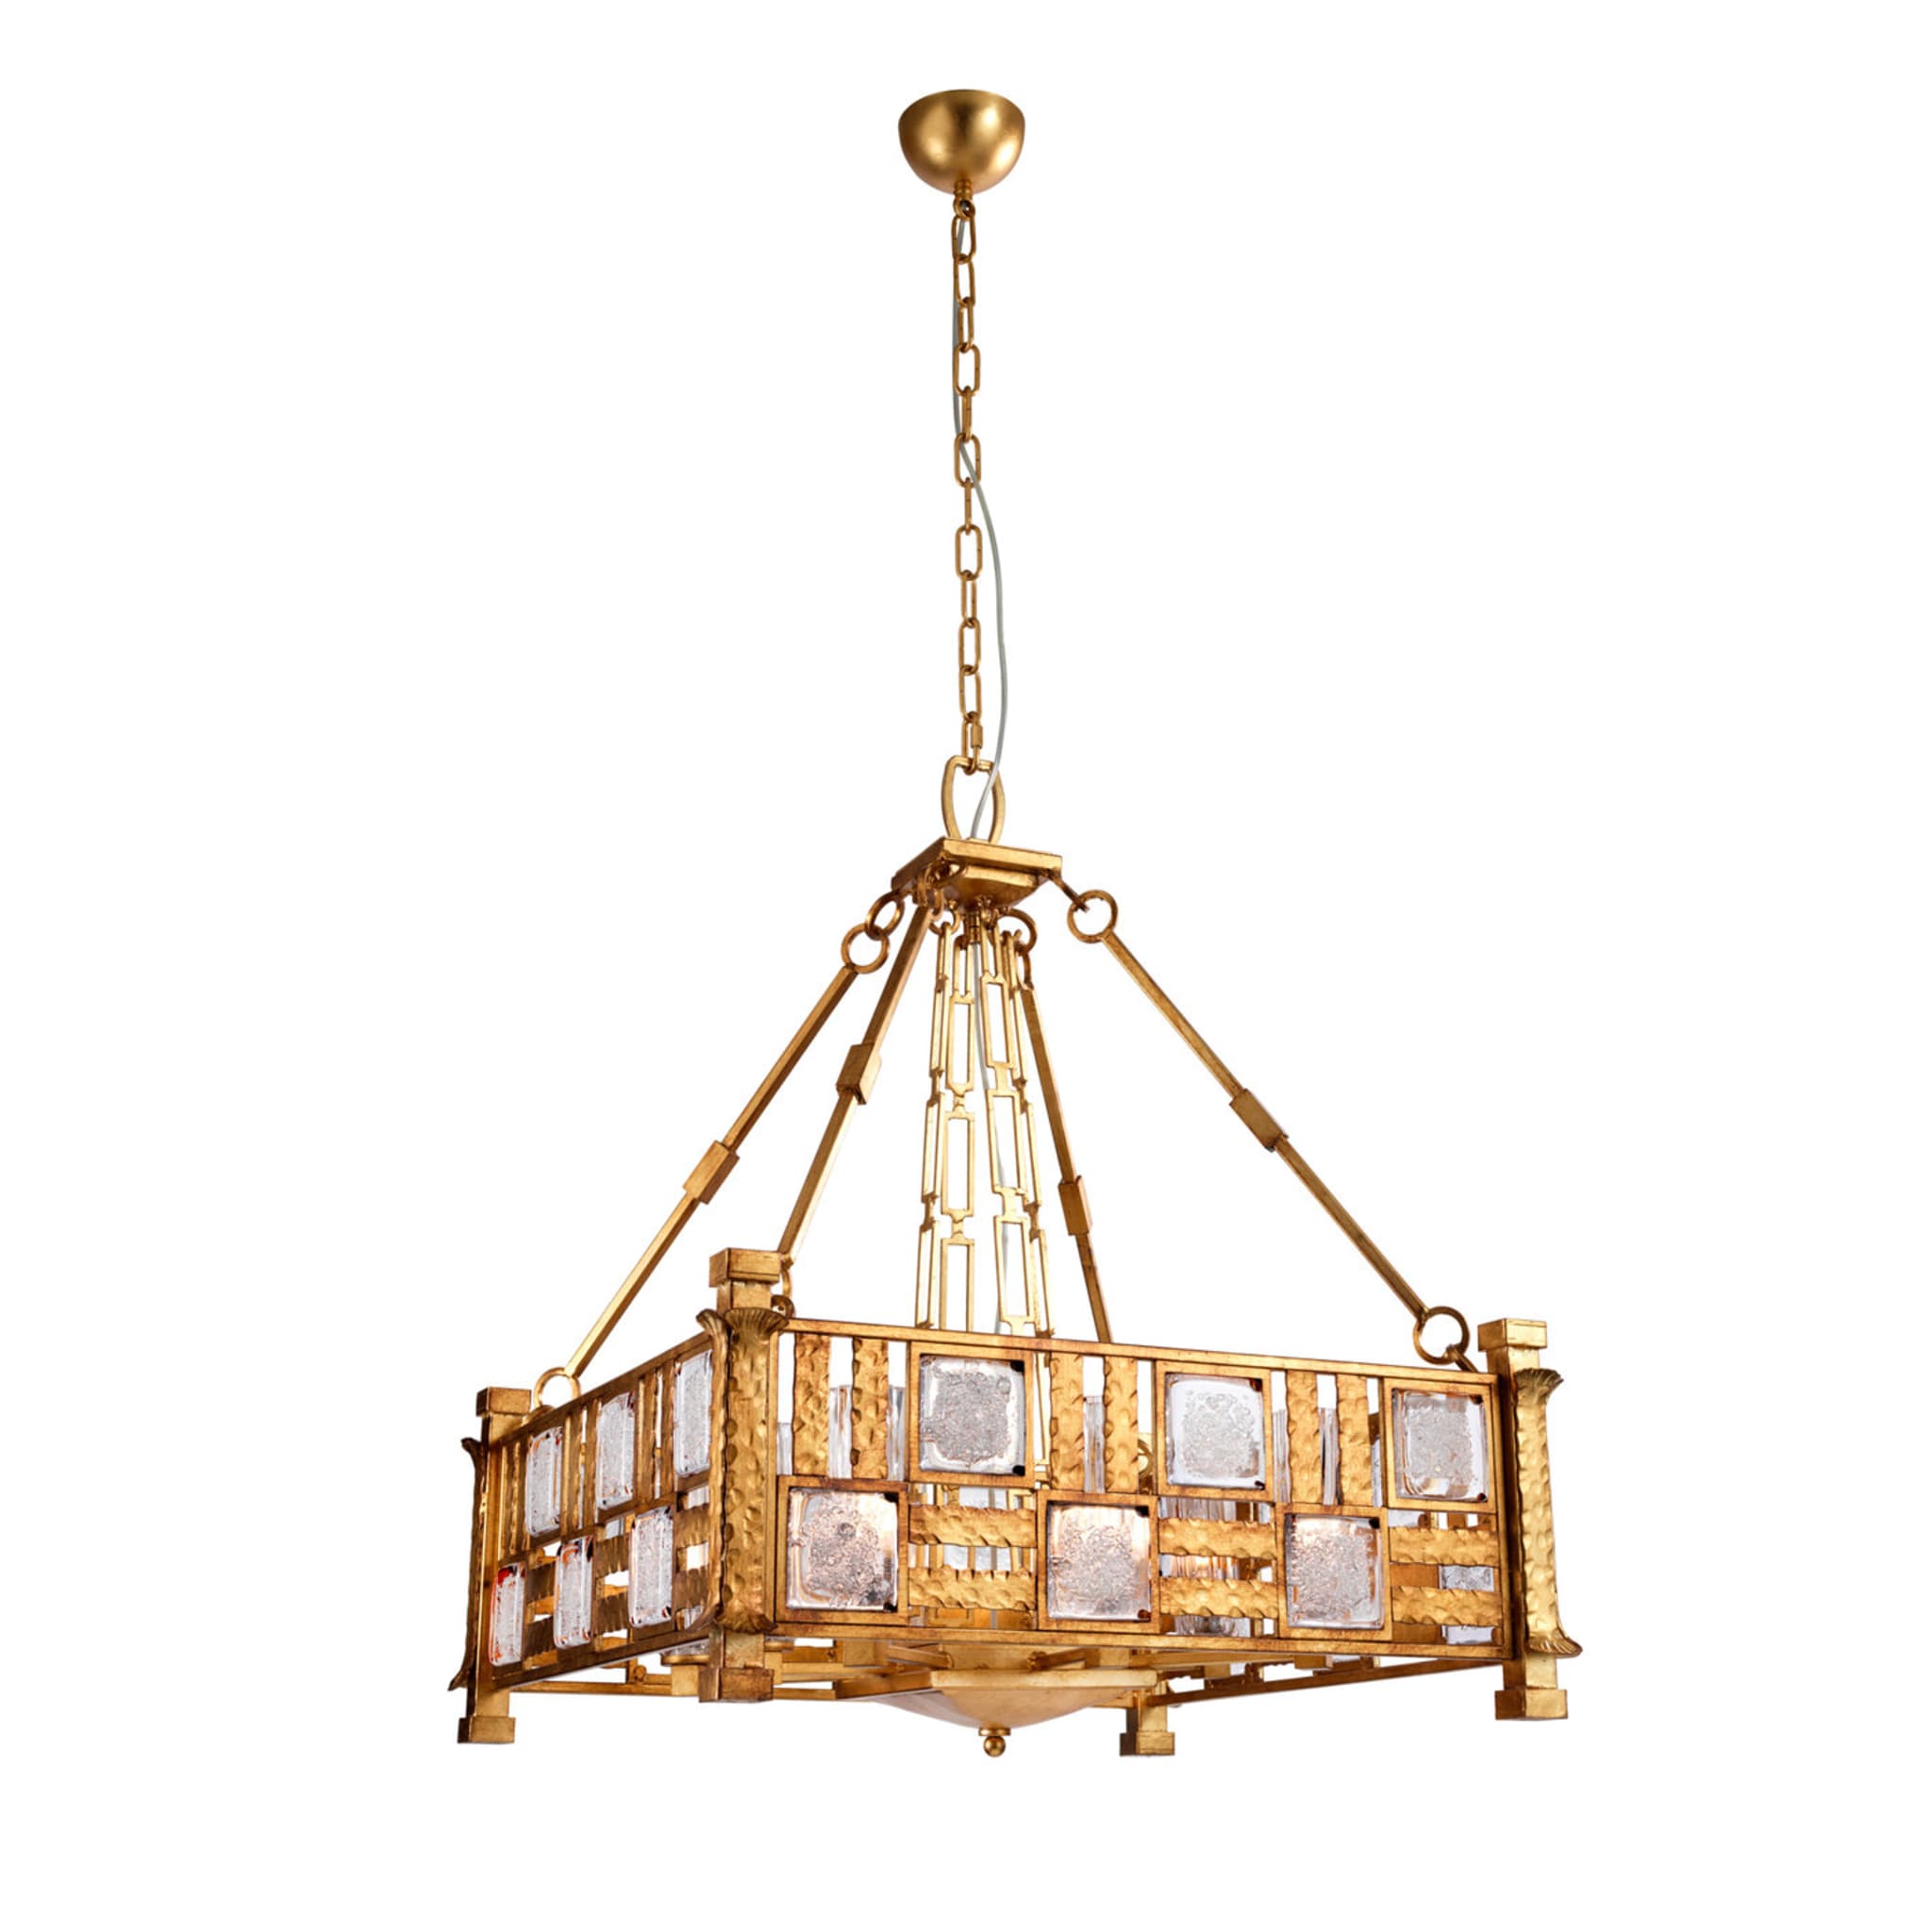 Lampe suspendue décorative #1 - Vue principale